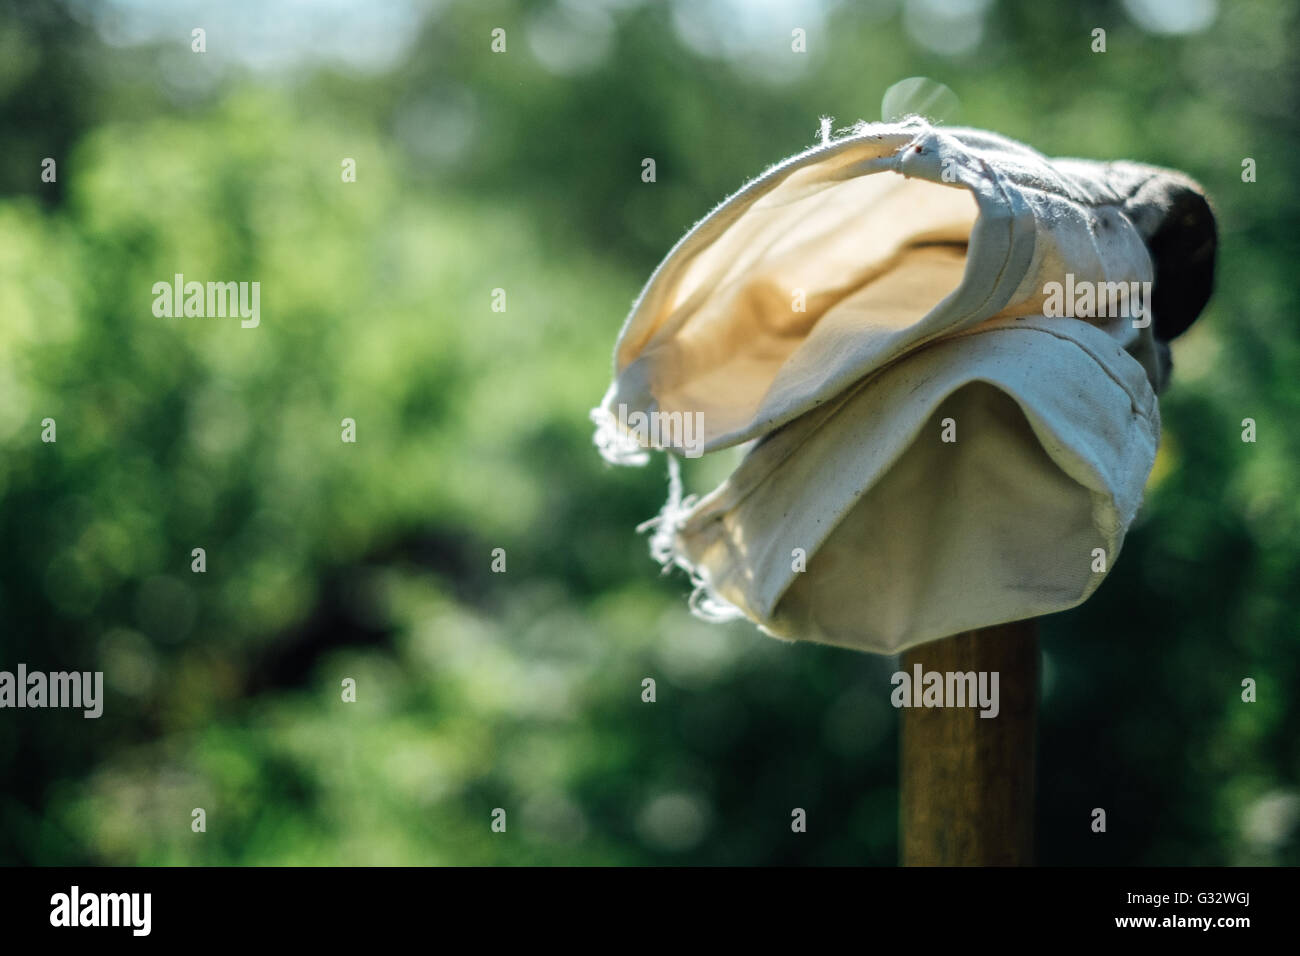 Nahaufnahme von Gartenhandschuhe auf hölzernen Pfosten Stockfoto